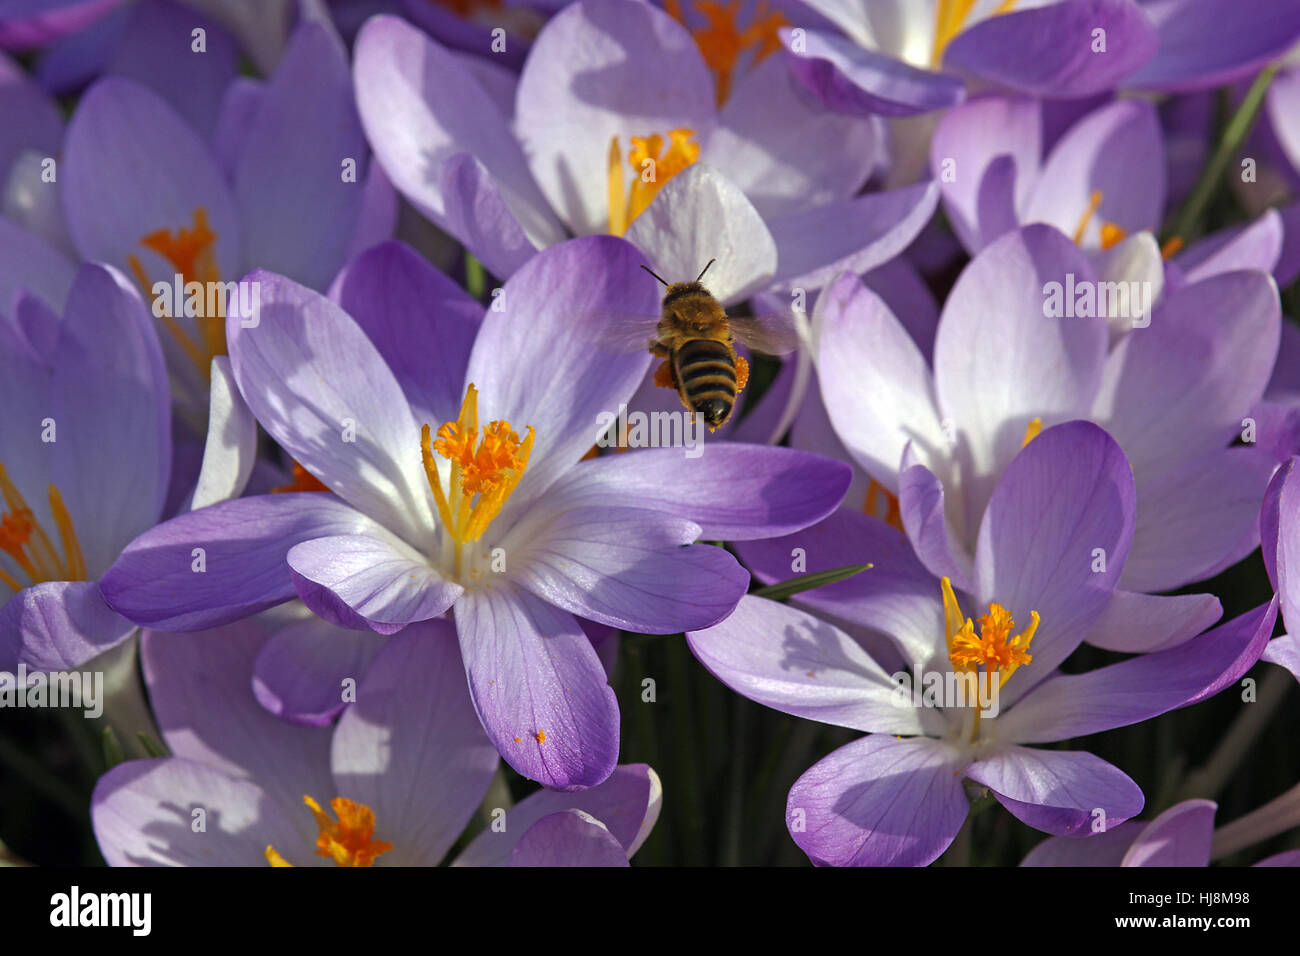 Crocus, viola, polline, honeybee, blu, macro close-up, macro di ammissione, chiudi Foto Stock